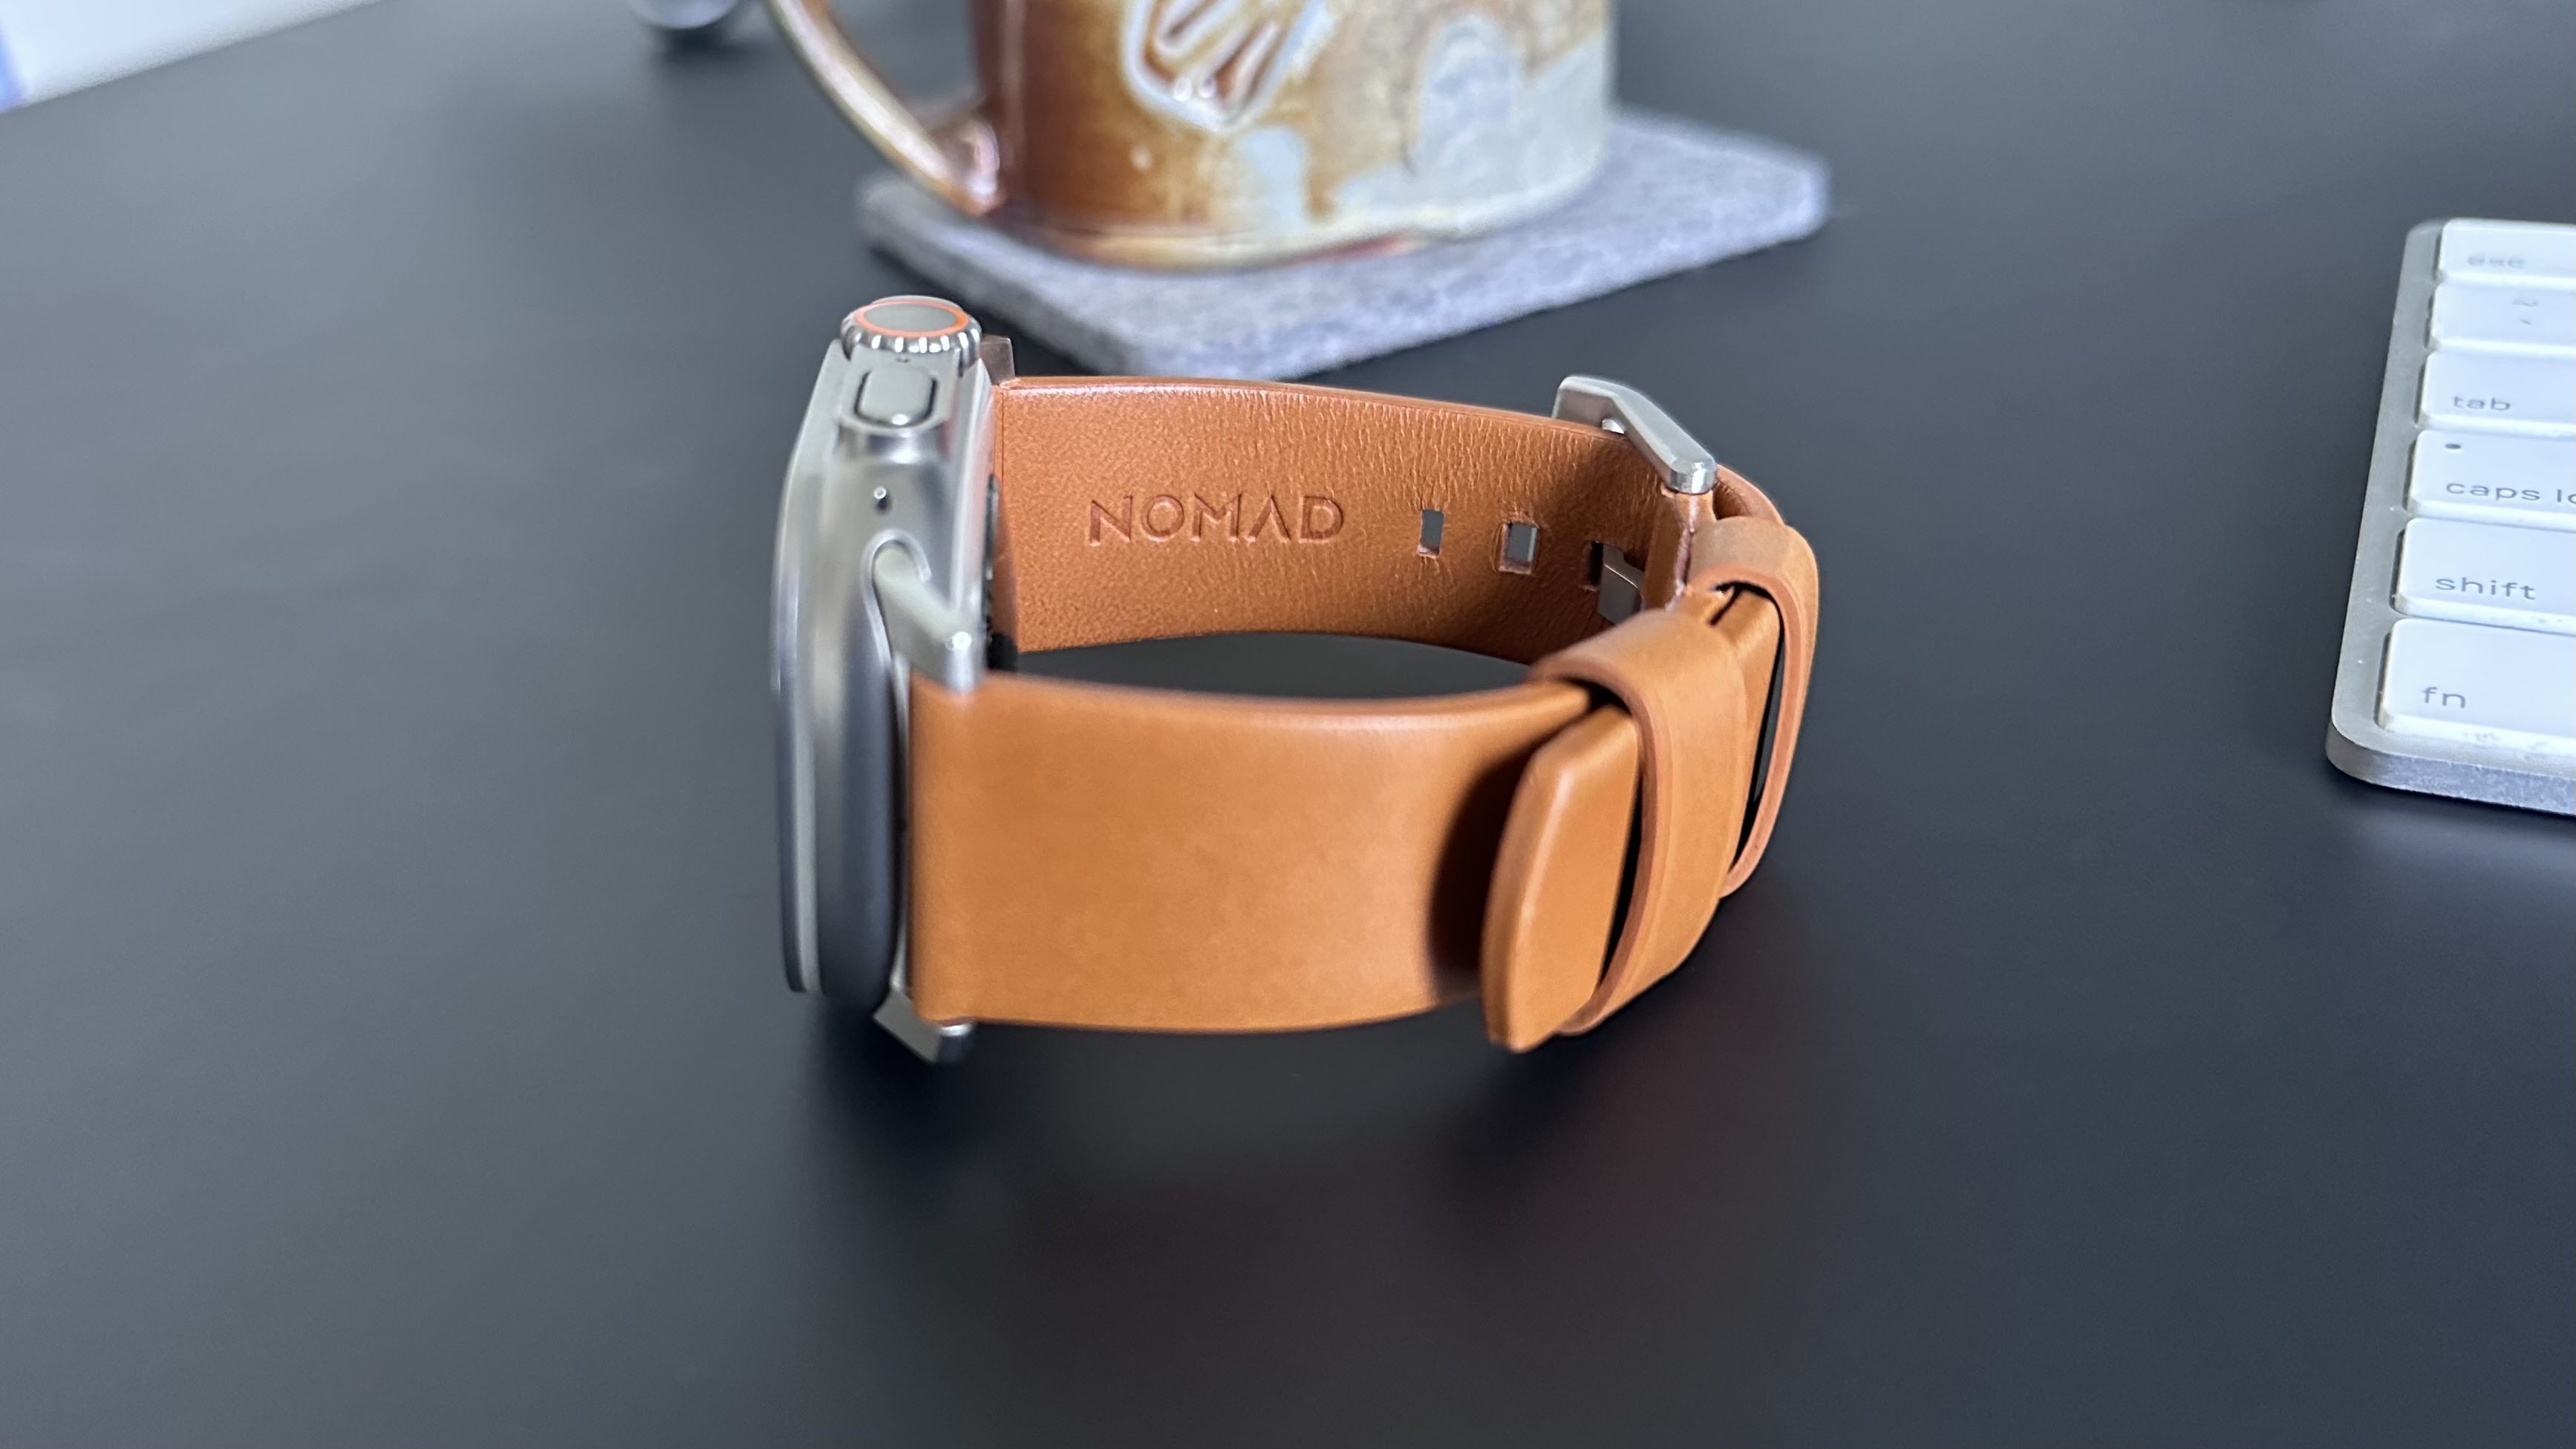 Nomad Modern Band Apple Watch yakından